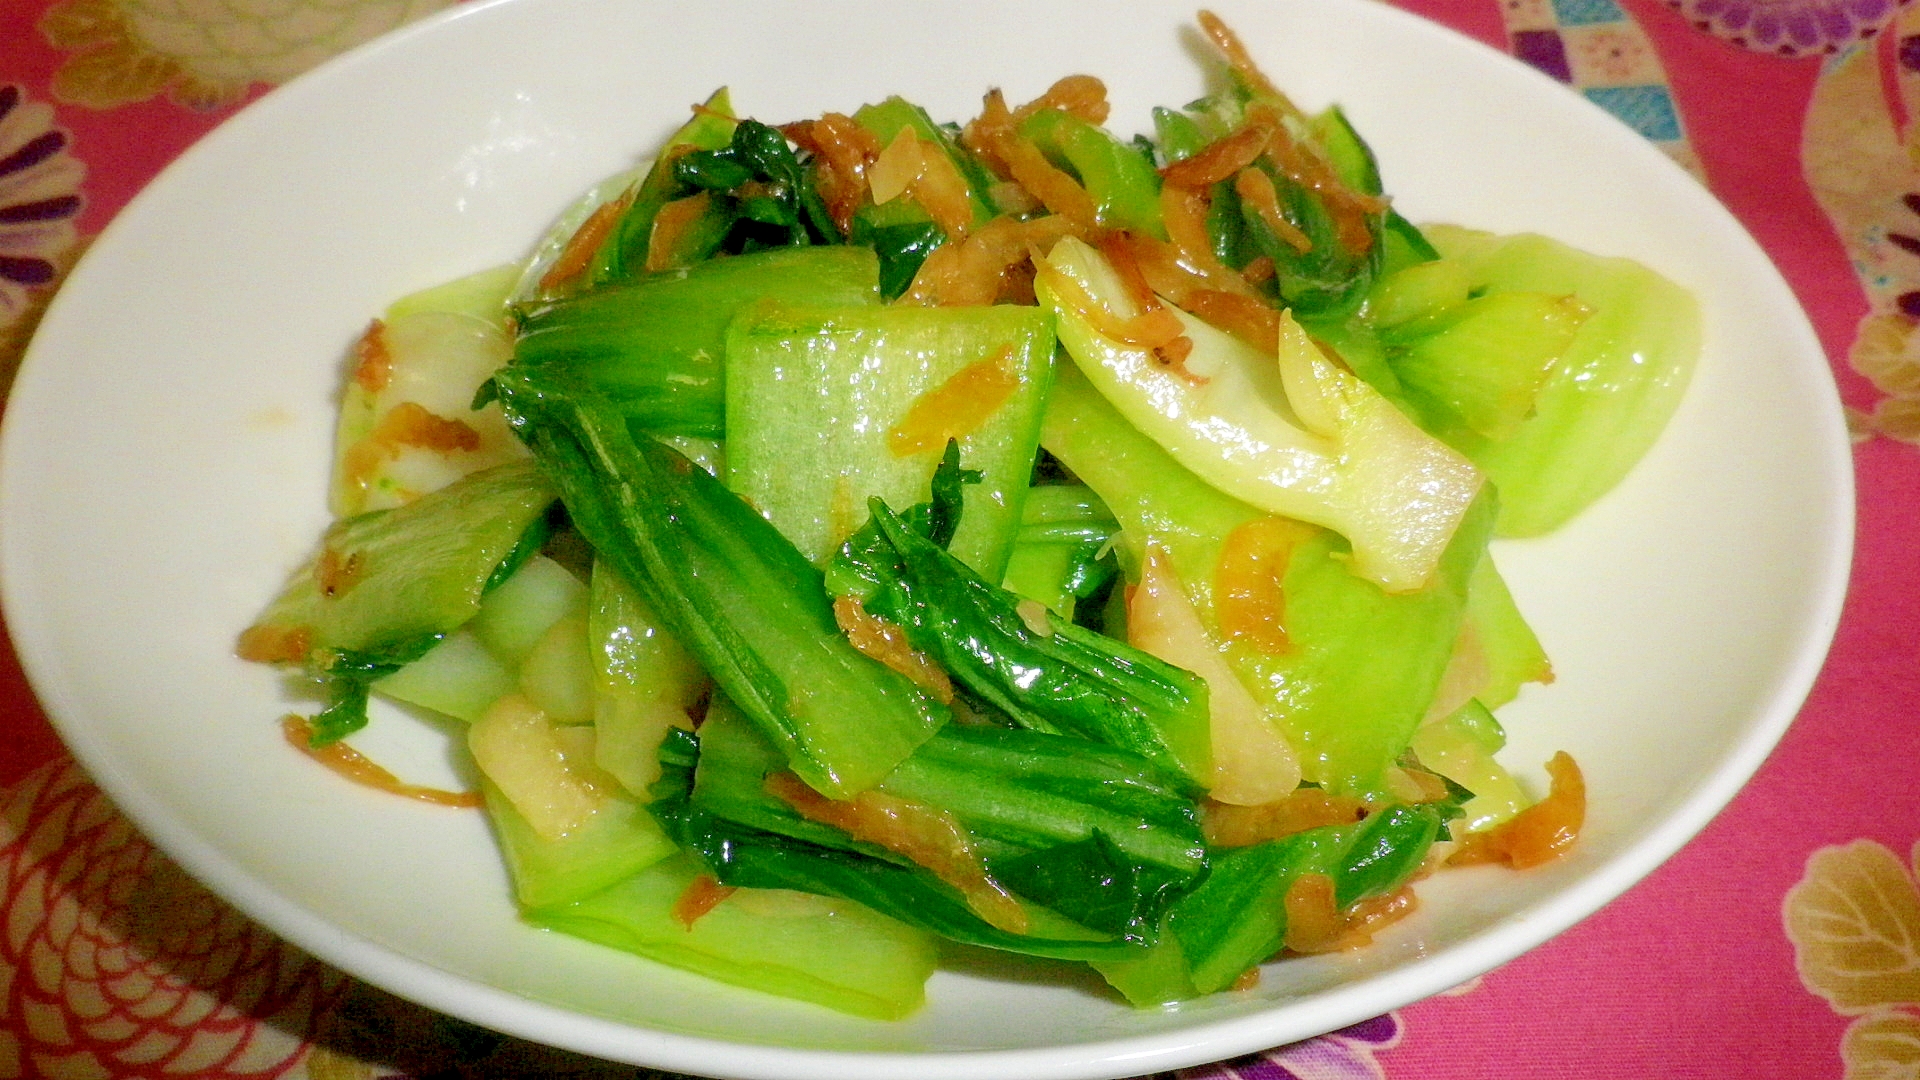 青梗菜と干しエビの炒め物